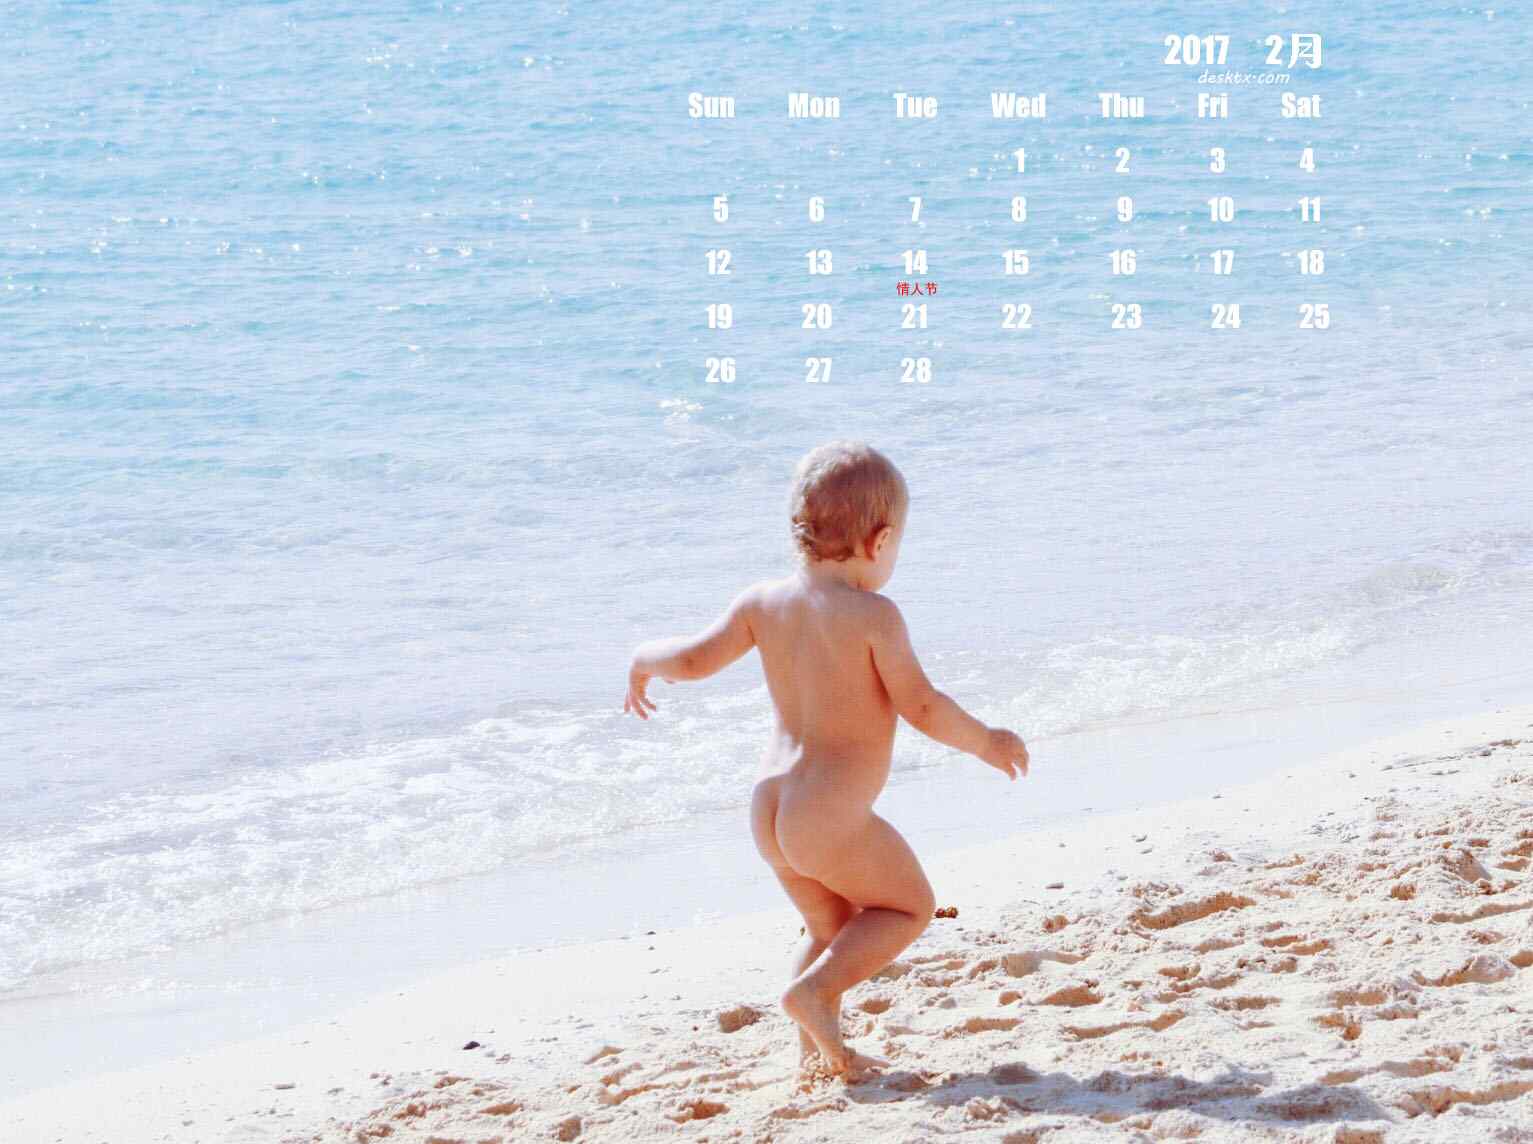 2017年2月日历之海边奔跑的小男孩